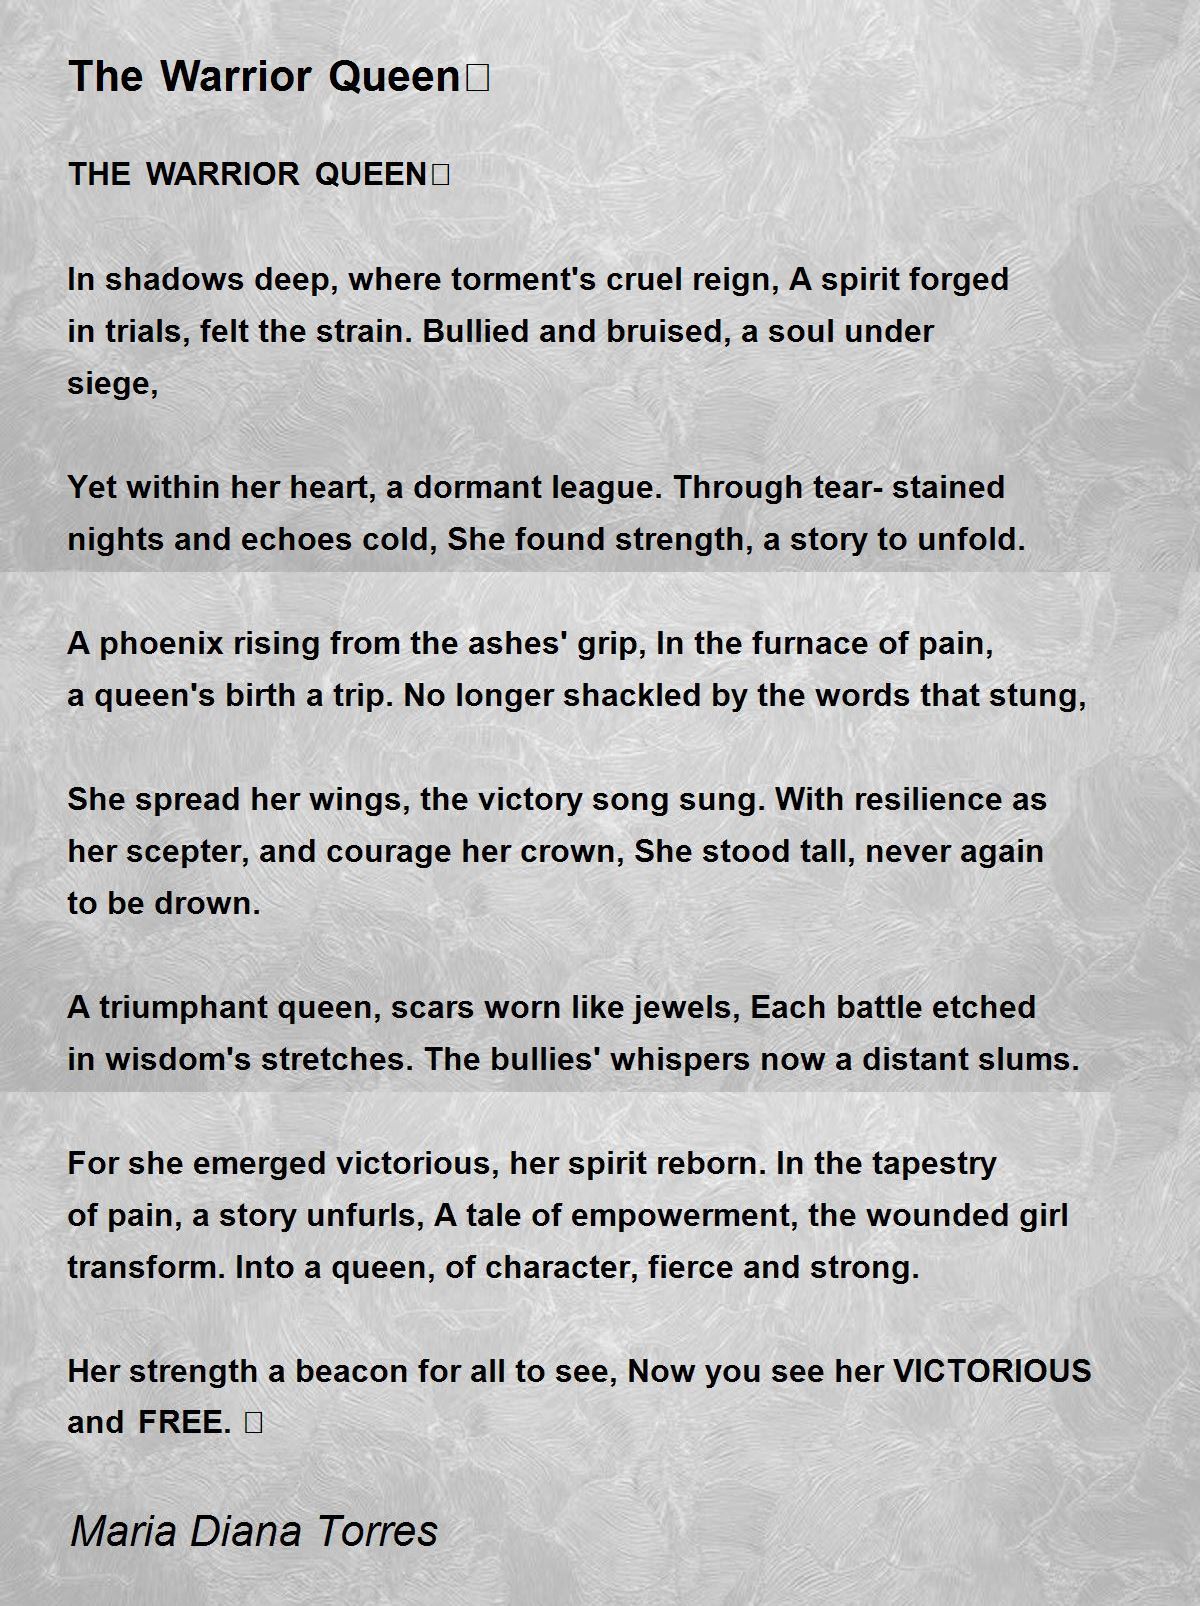 The Warrior Queen👸 - The Warrior Queen👸 Poem by Maria Diana Torres